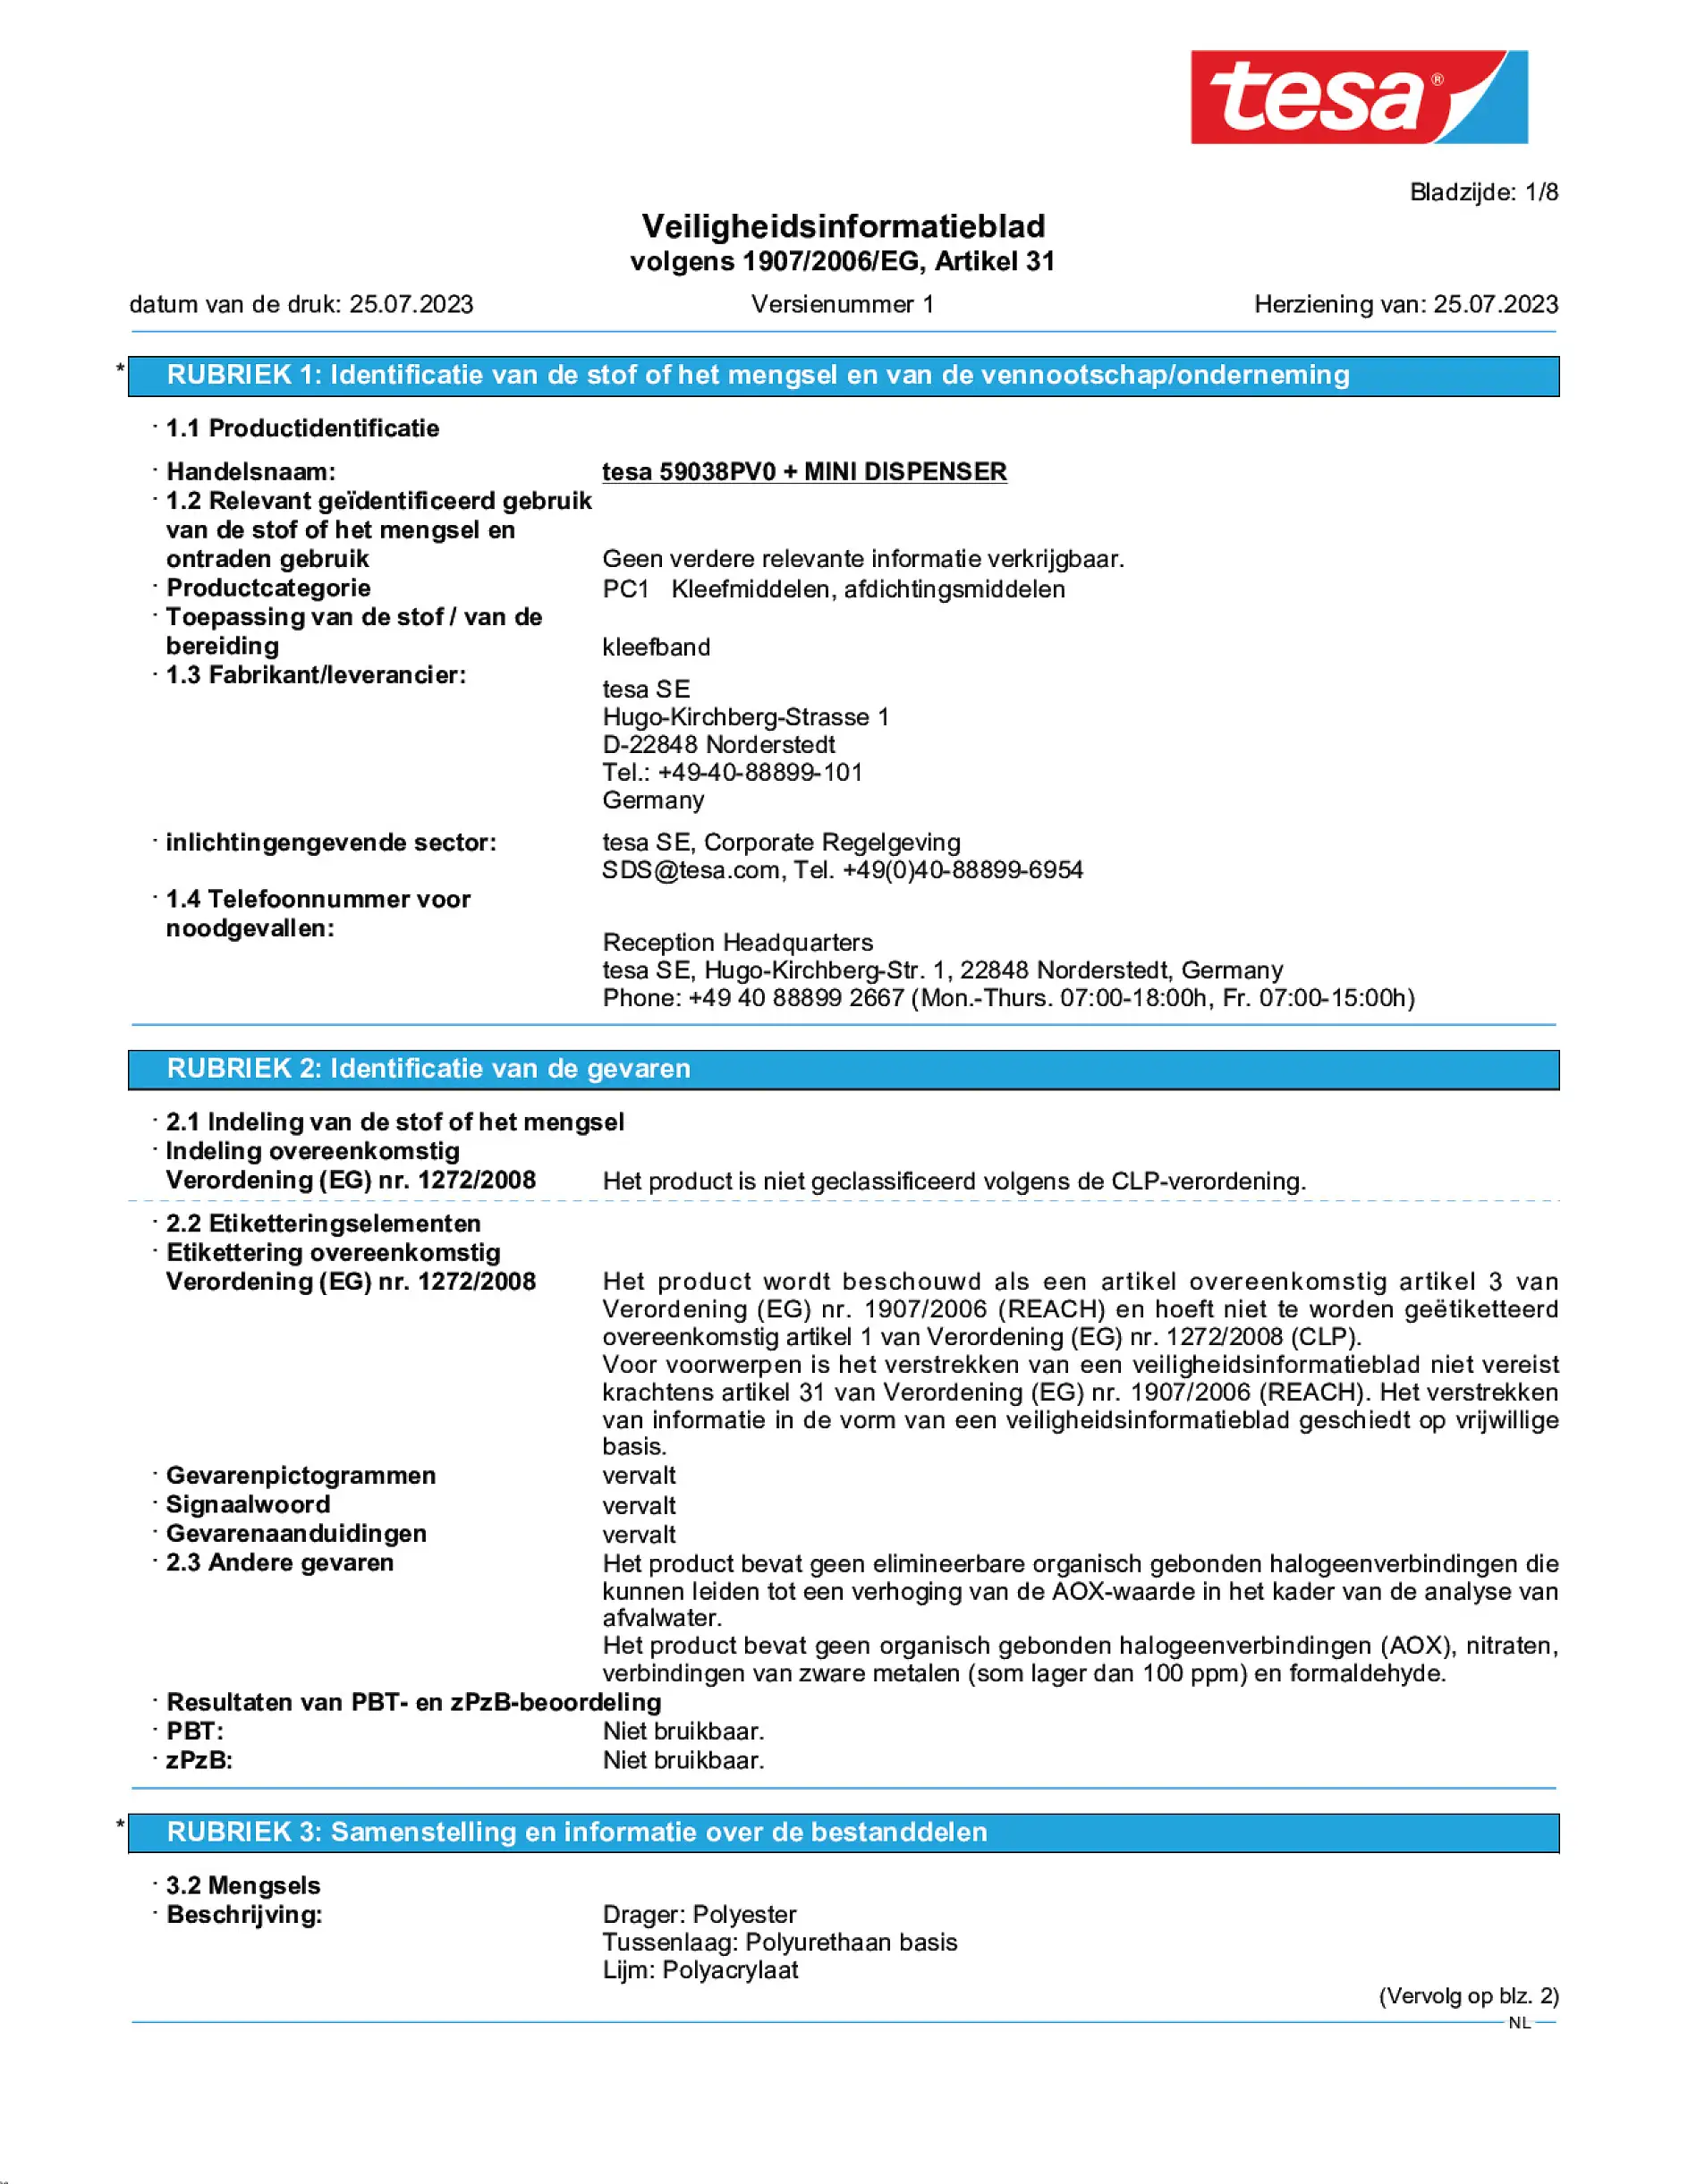 Safety data sheet_tesafilm® 59038_nl-NL_v1